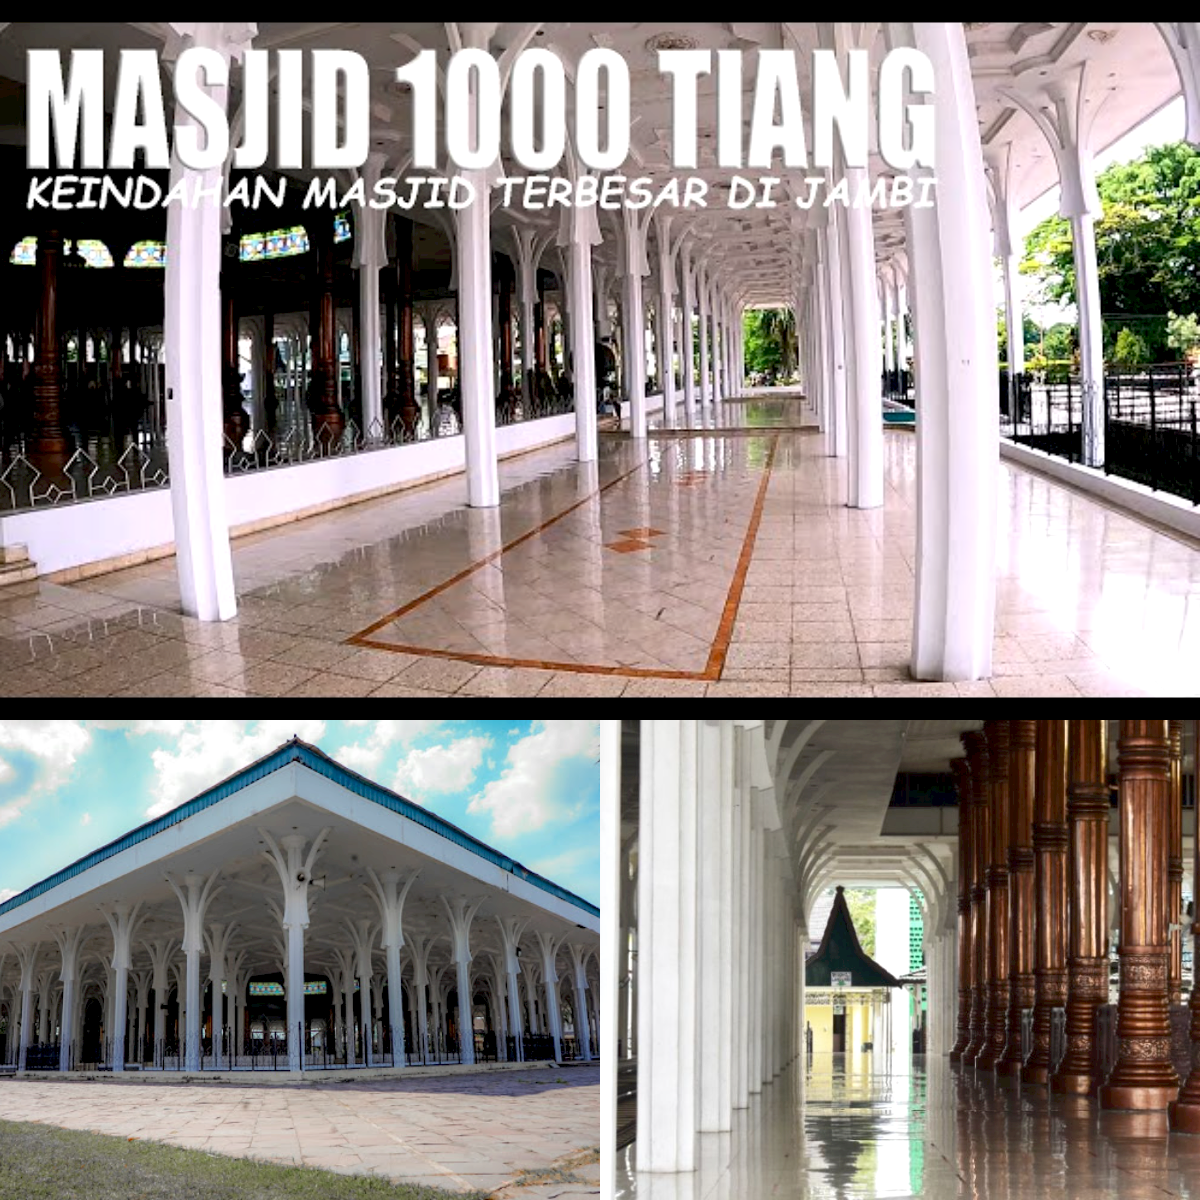 Mengupas Sejarah Singkat Masjid 1000 Tiang Di Jambi, Begini Kisahnya!